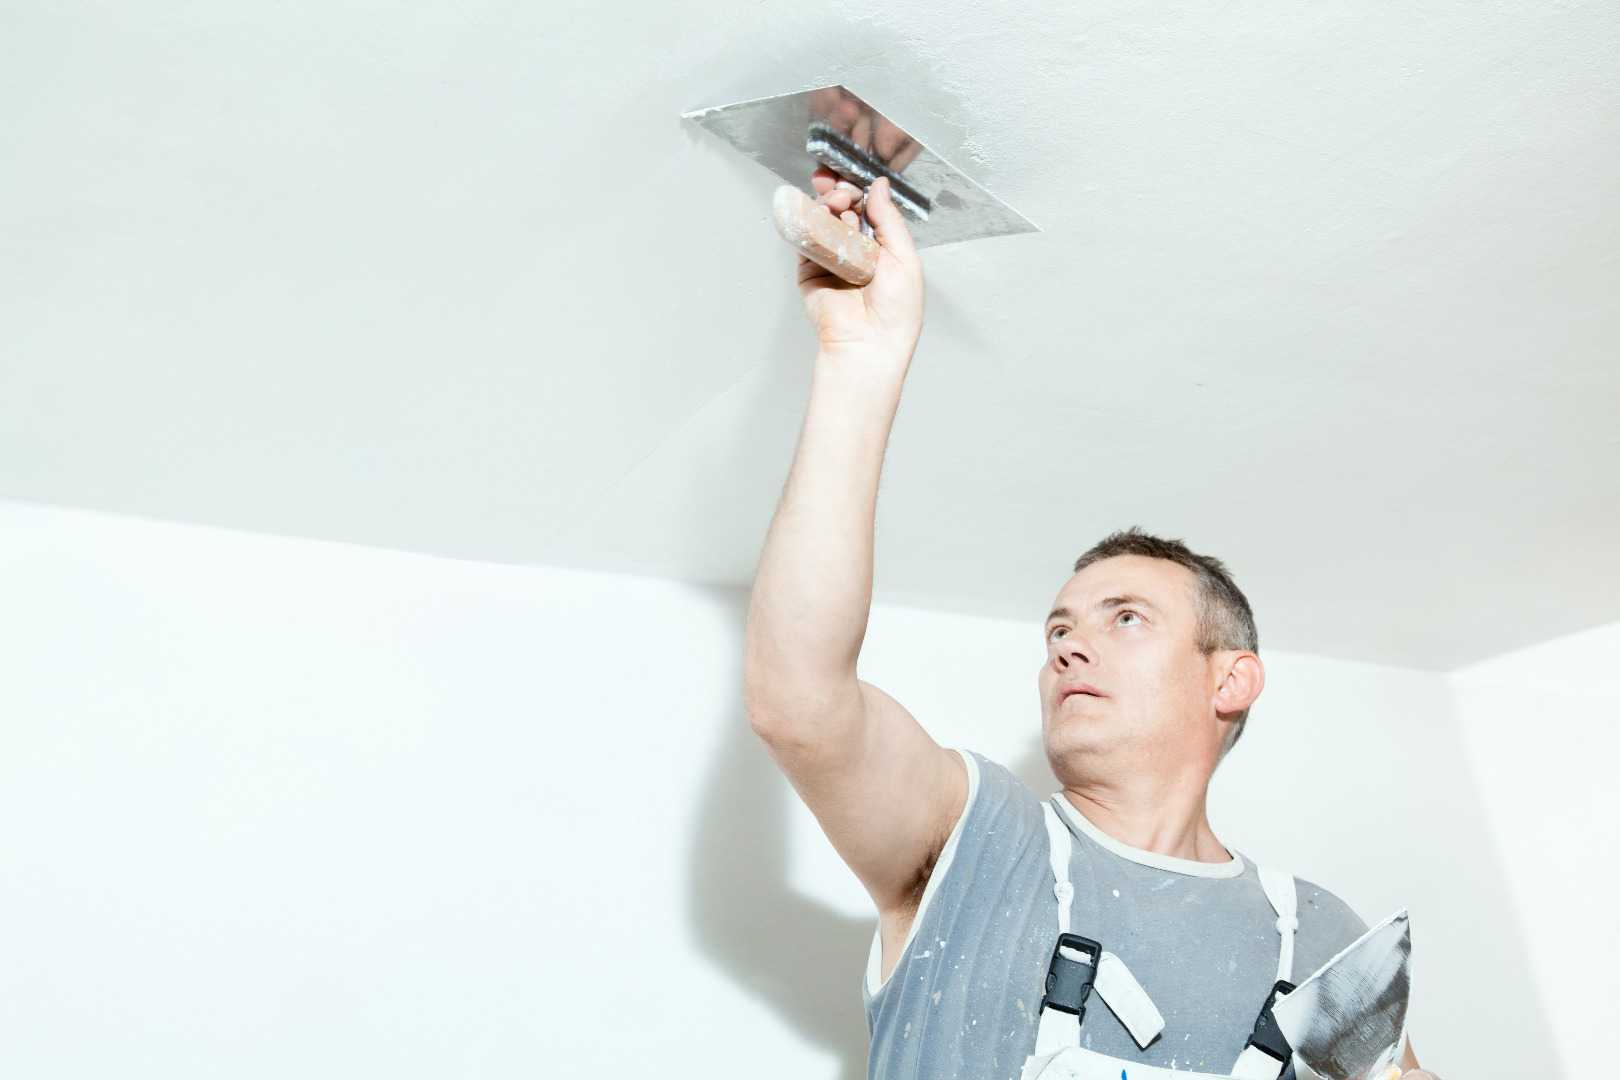 Как сделать ремонт потолков в квартире своими руками - технология и варианты устройства, фотографии и видео